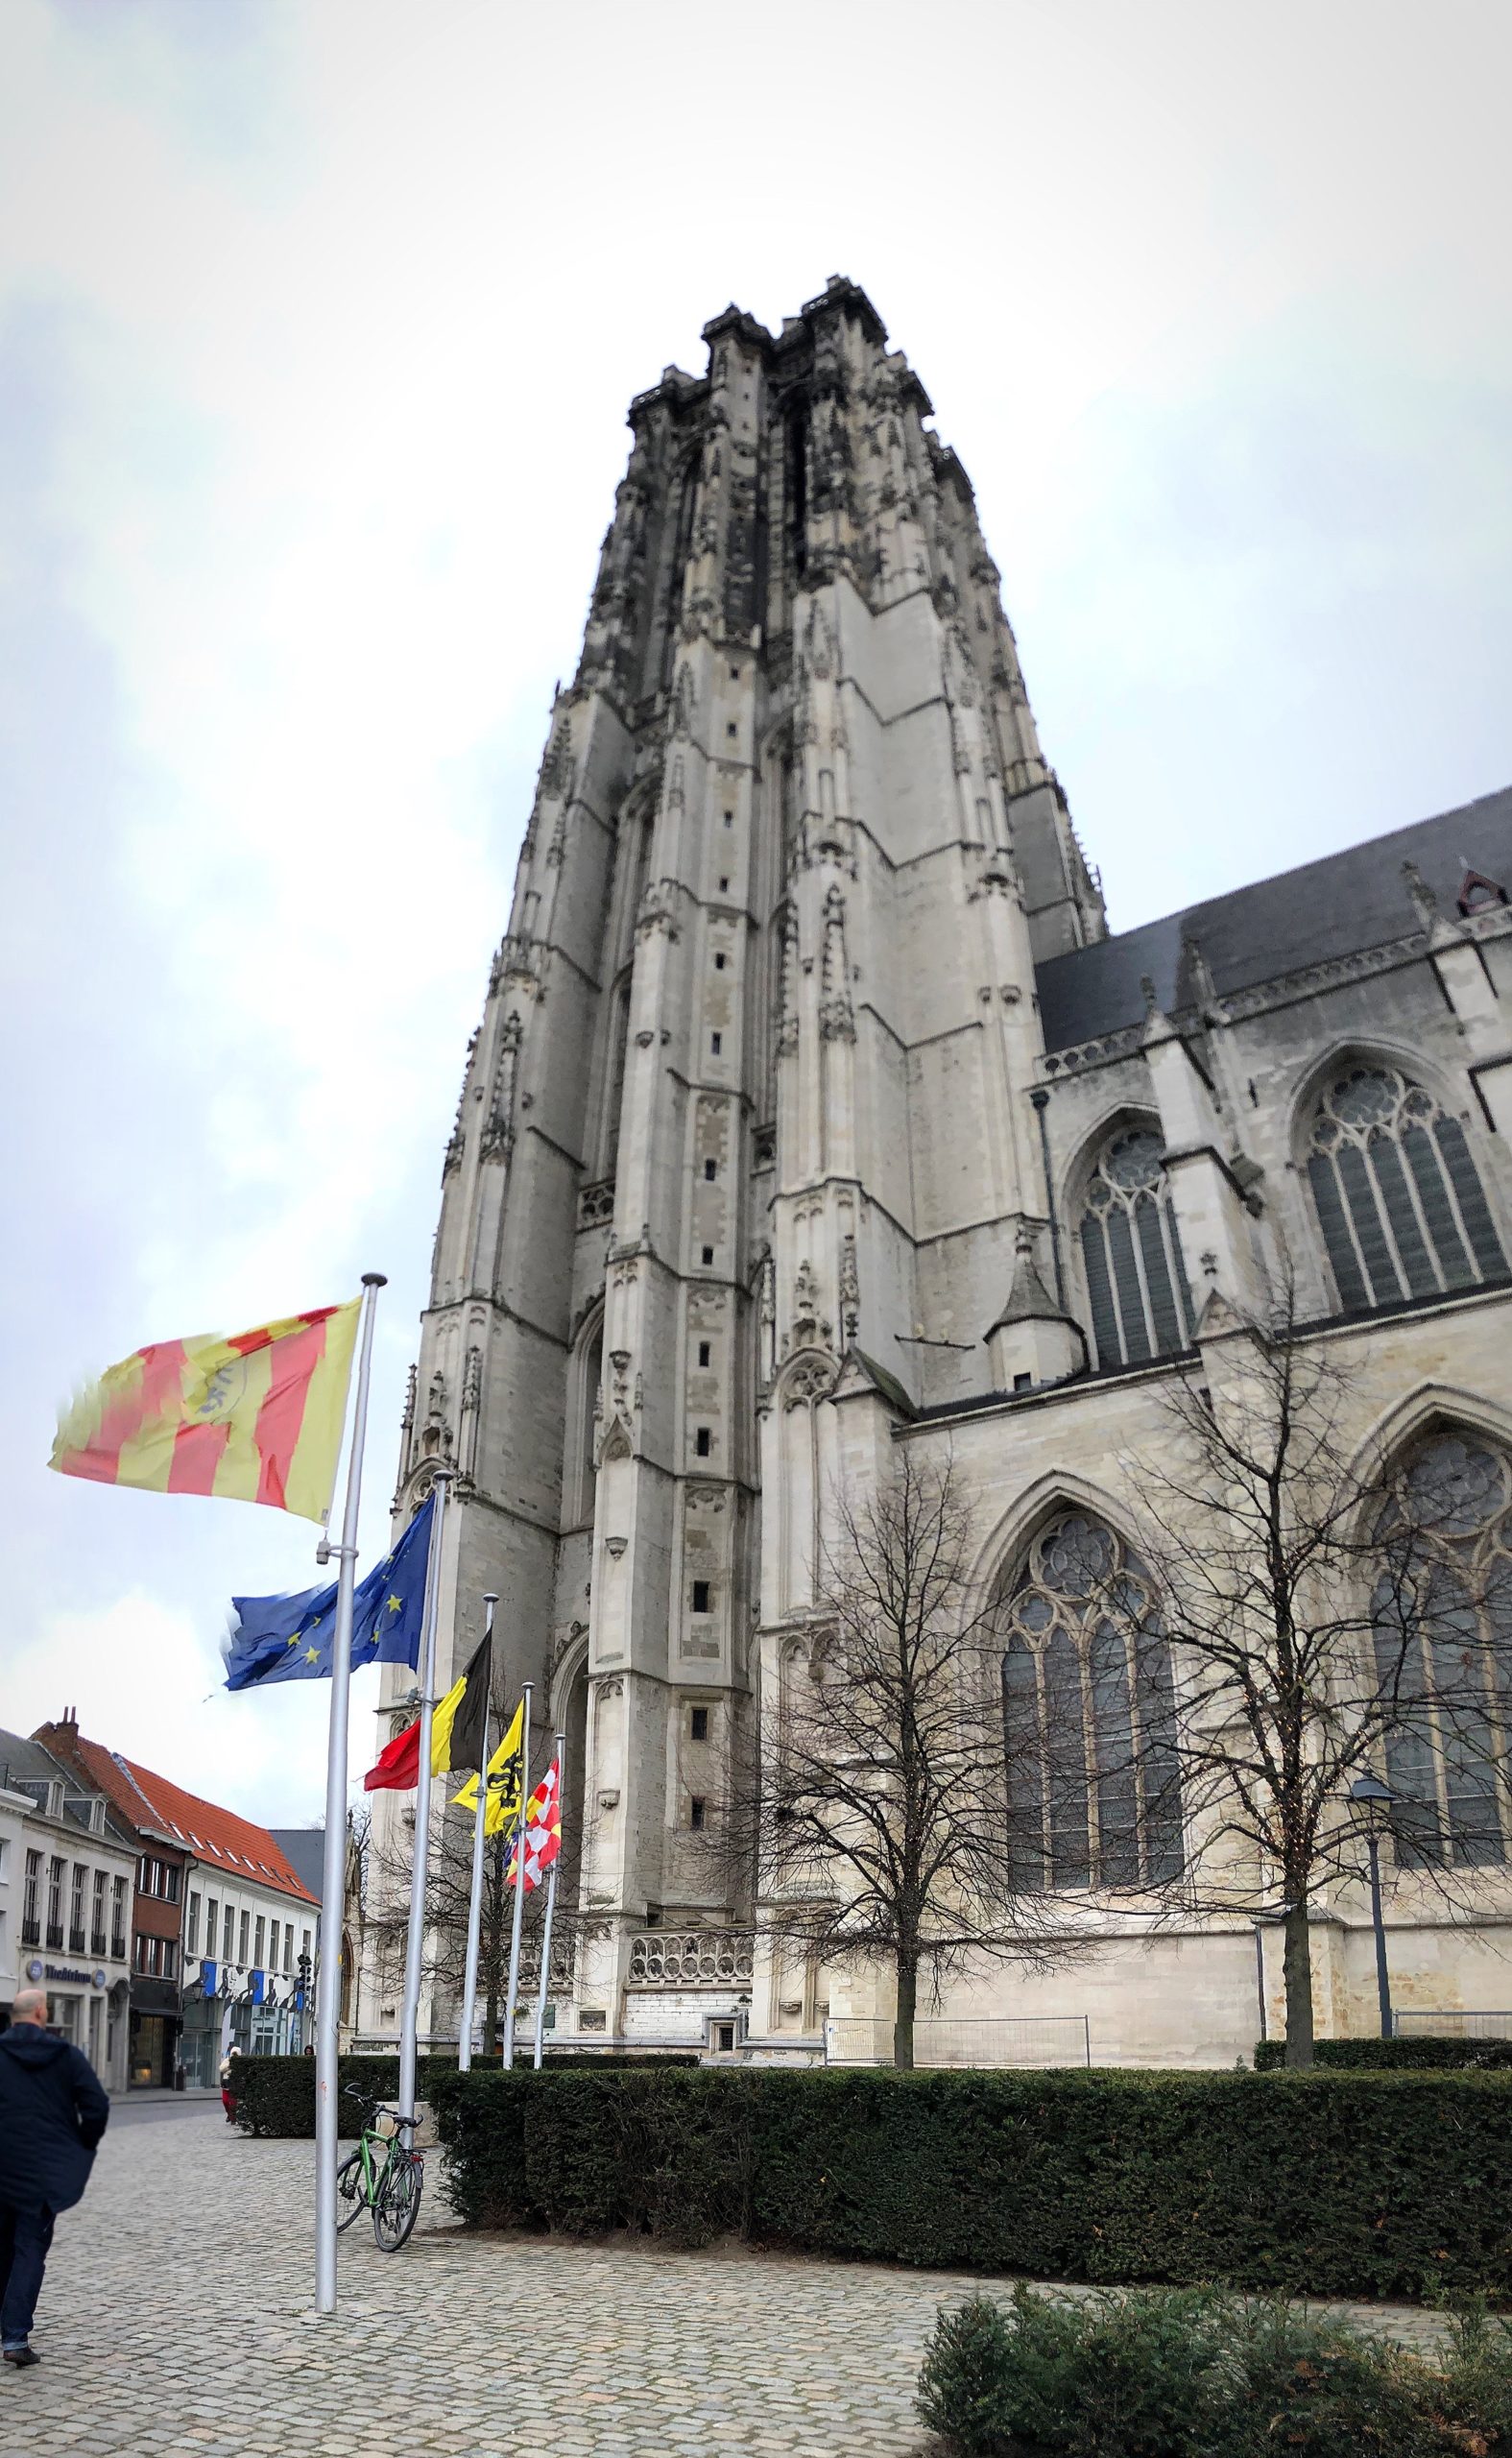 St. Rumbold's Tower Mechelen Belgium